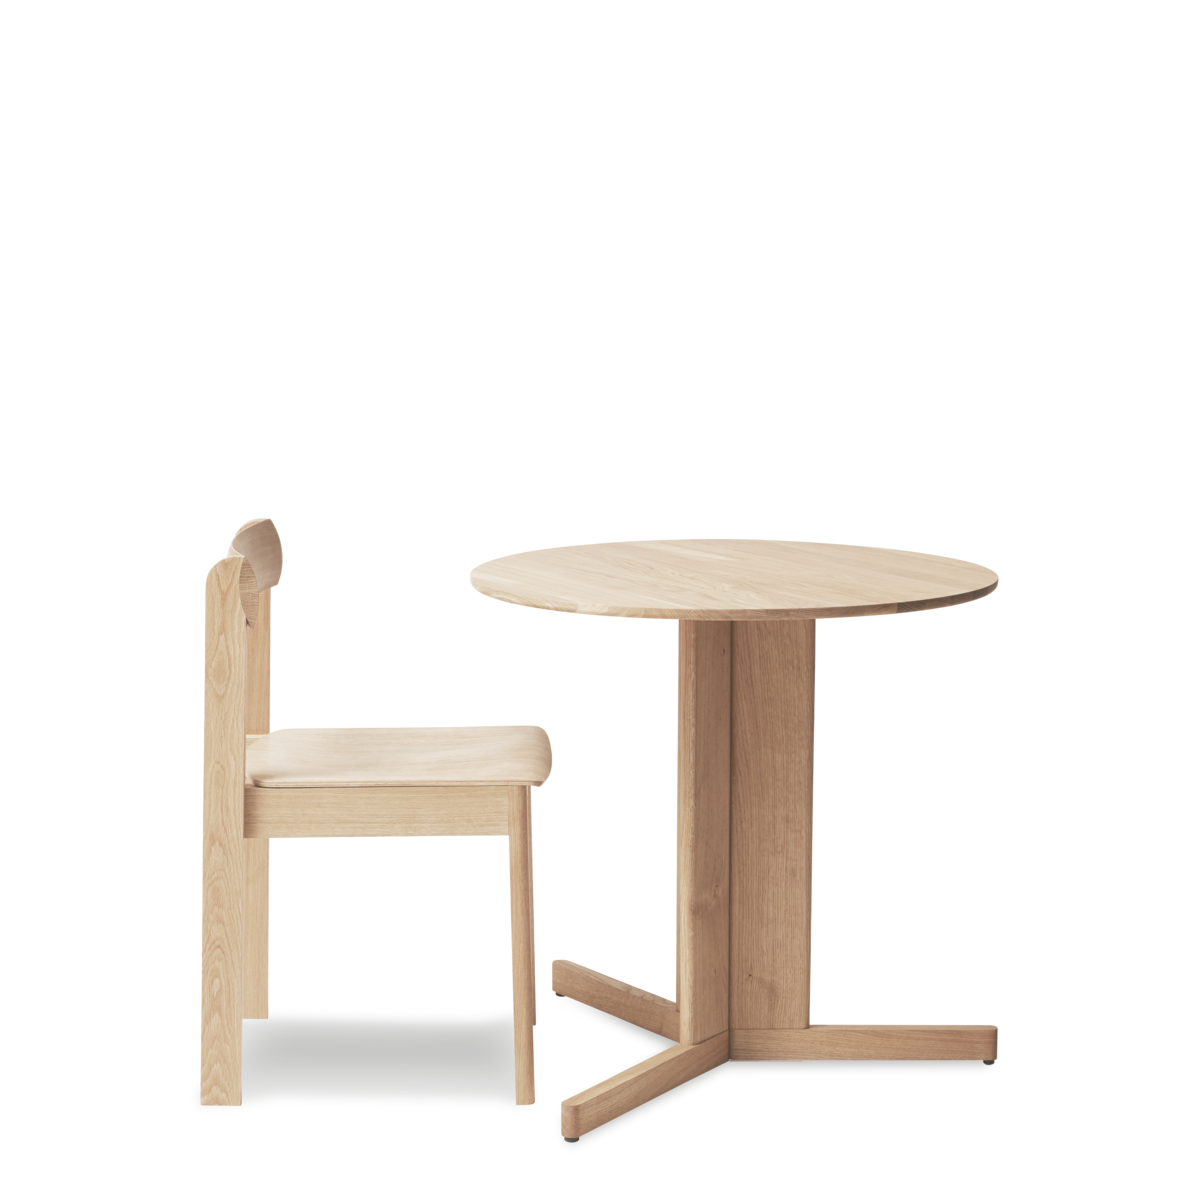 Form & Refine / Trefoil Table Ø75 / トレフォイルテーブル Ø75